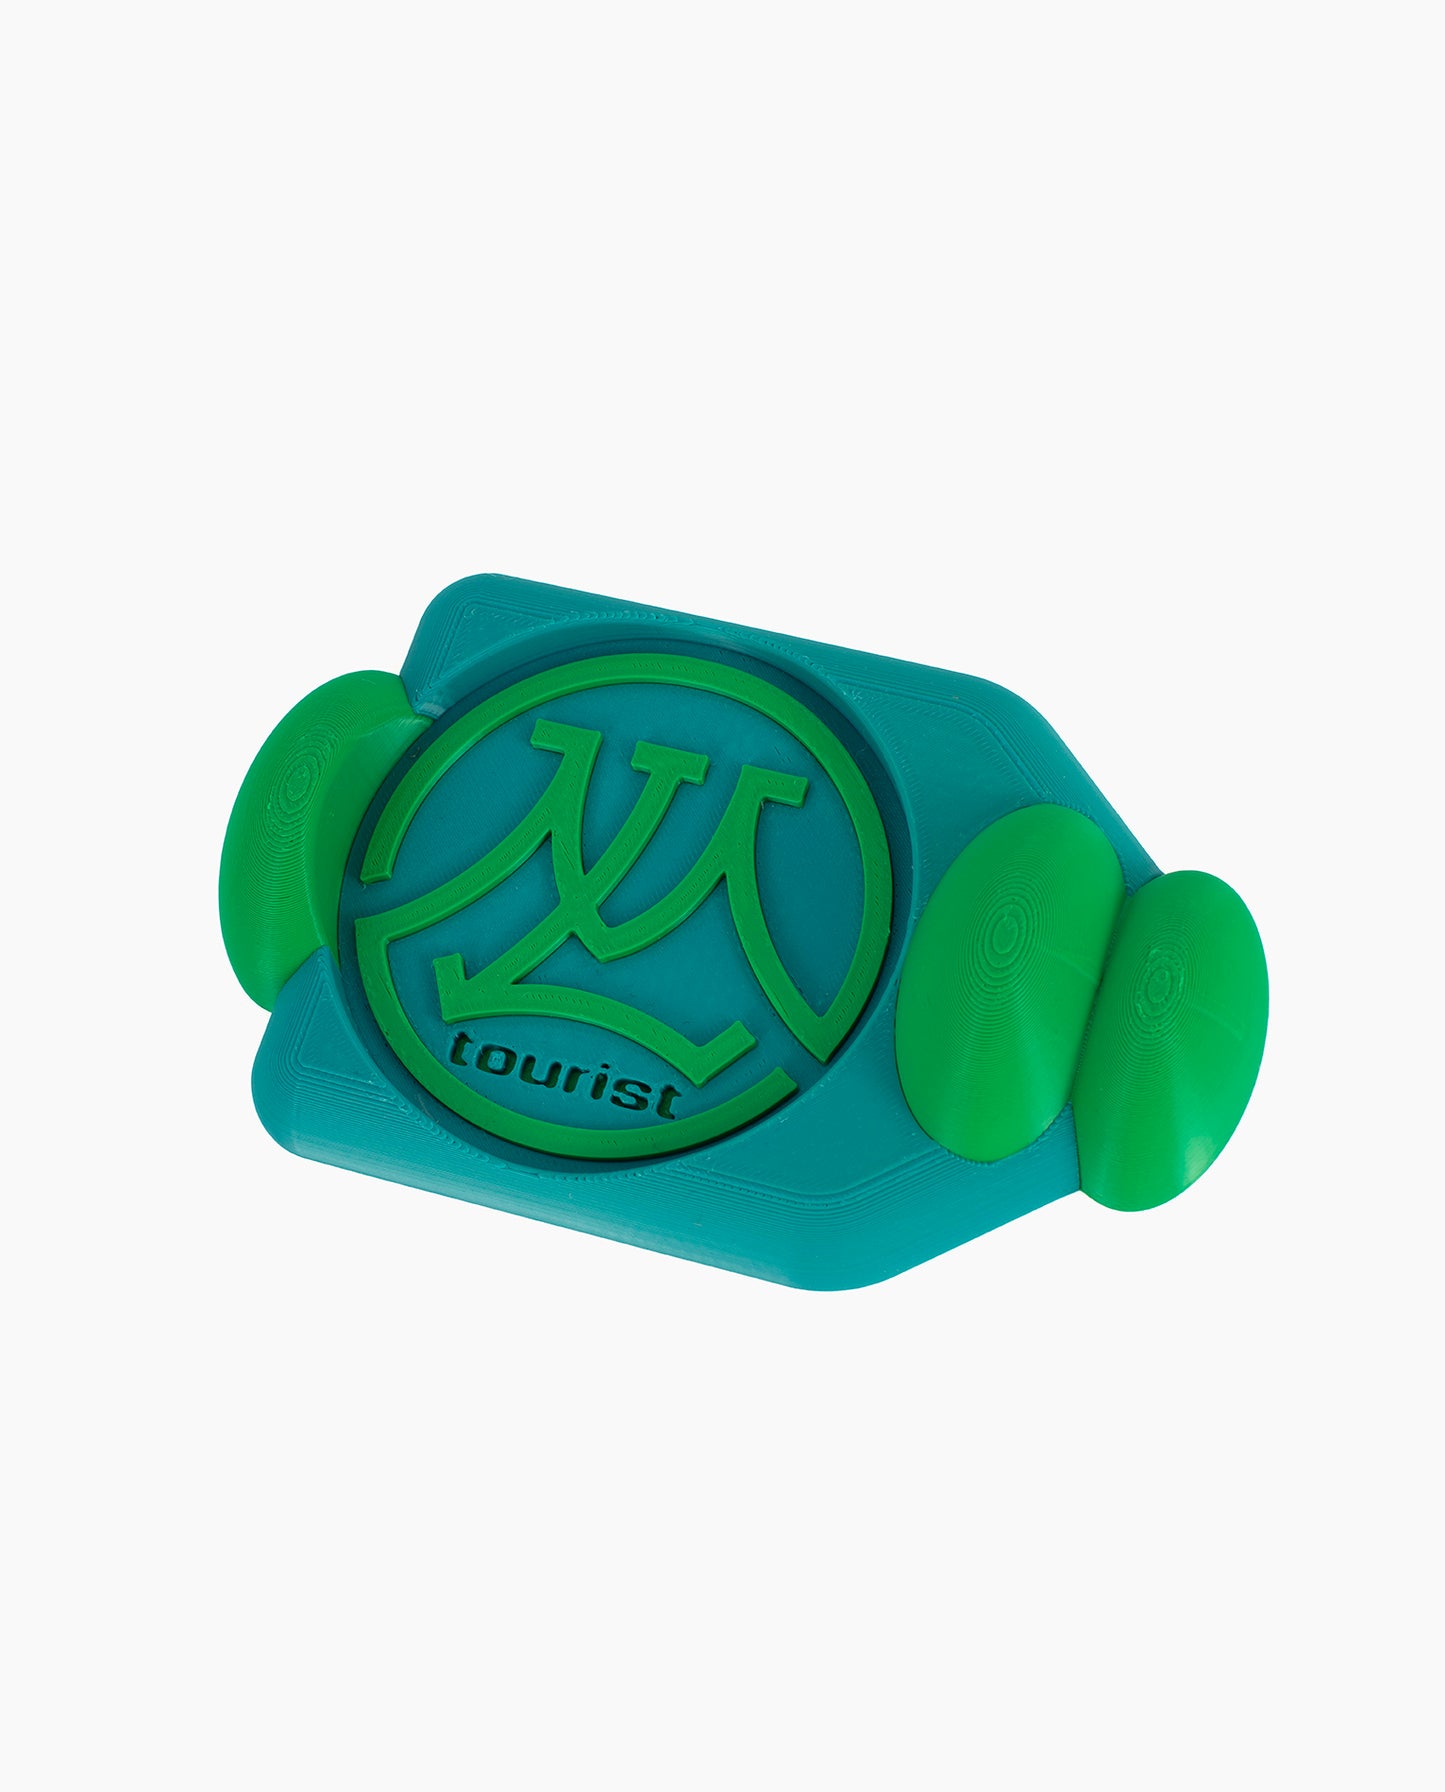 Green and Blue Ring Mug + Coaster